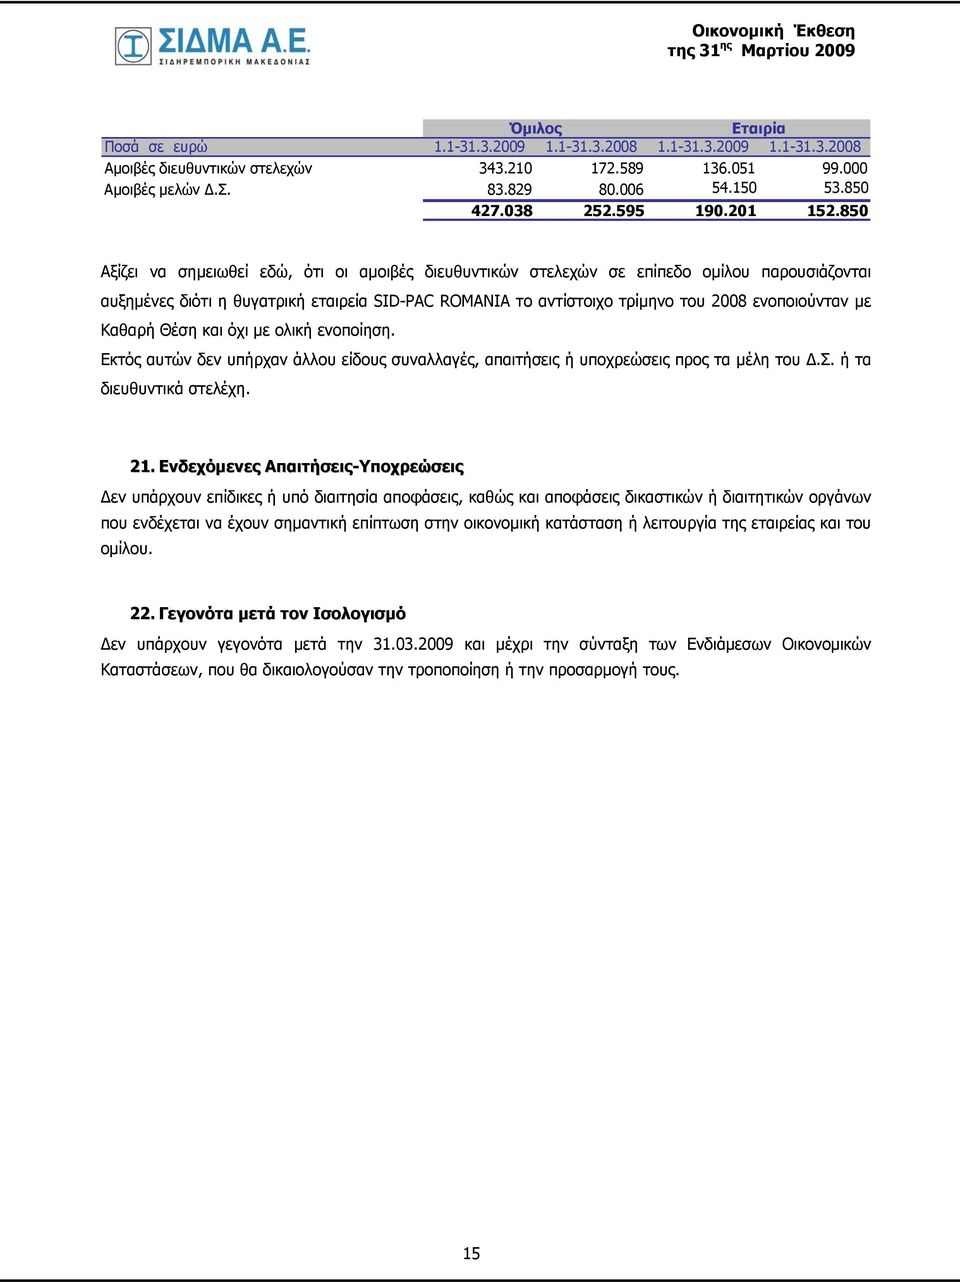 850 Αξίζει να σημειωθεί εδώ, ότι οι αμοιβές διευθυντικών στελεχών σε επίπεδο ομίλου παρουσιάζονται αυξημένες διότι η θυγατρική εταιρεία SID-PAC ROMANIA το αντίστοιχο τρίμηνο του 2008 ενοποιούνταν με